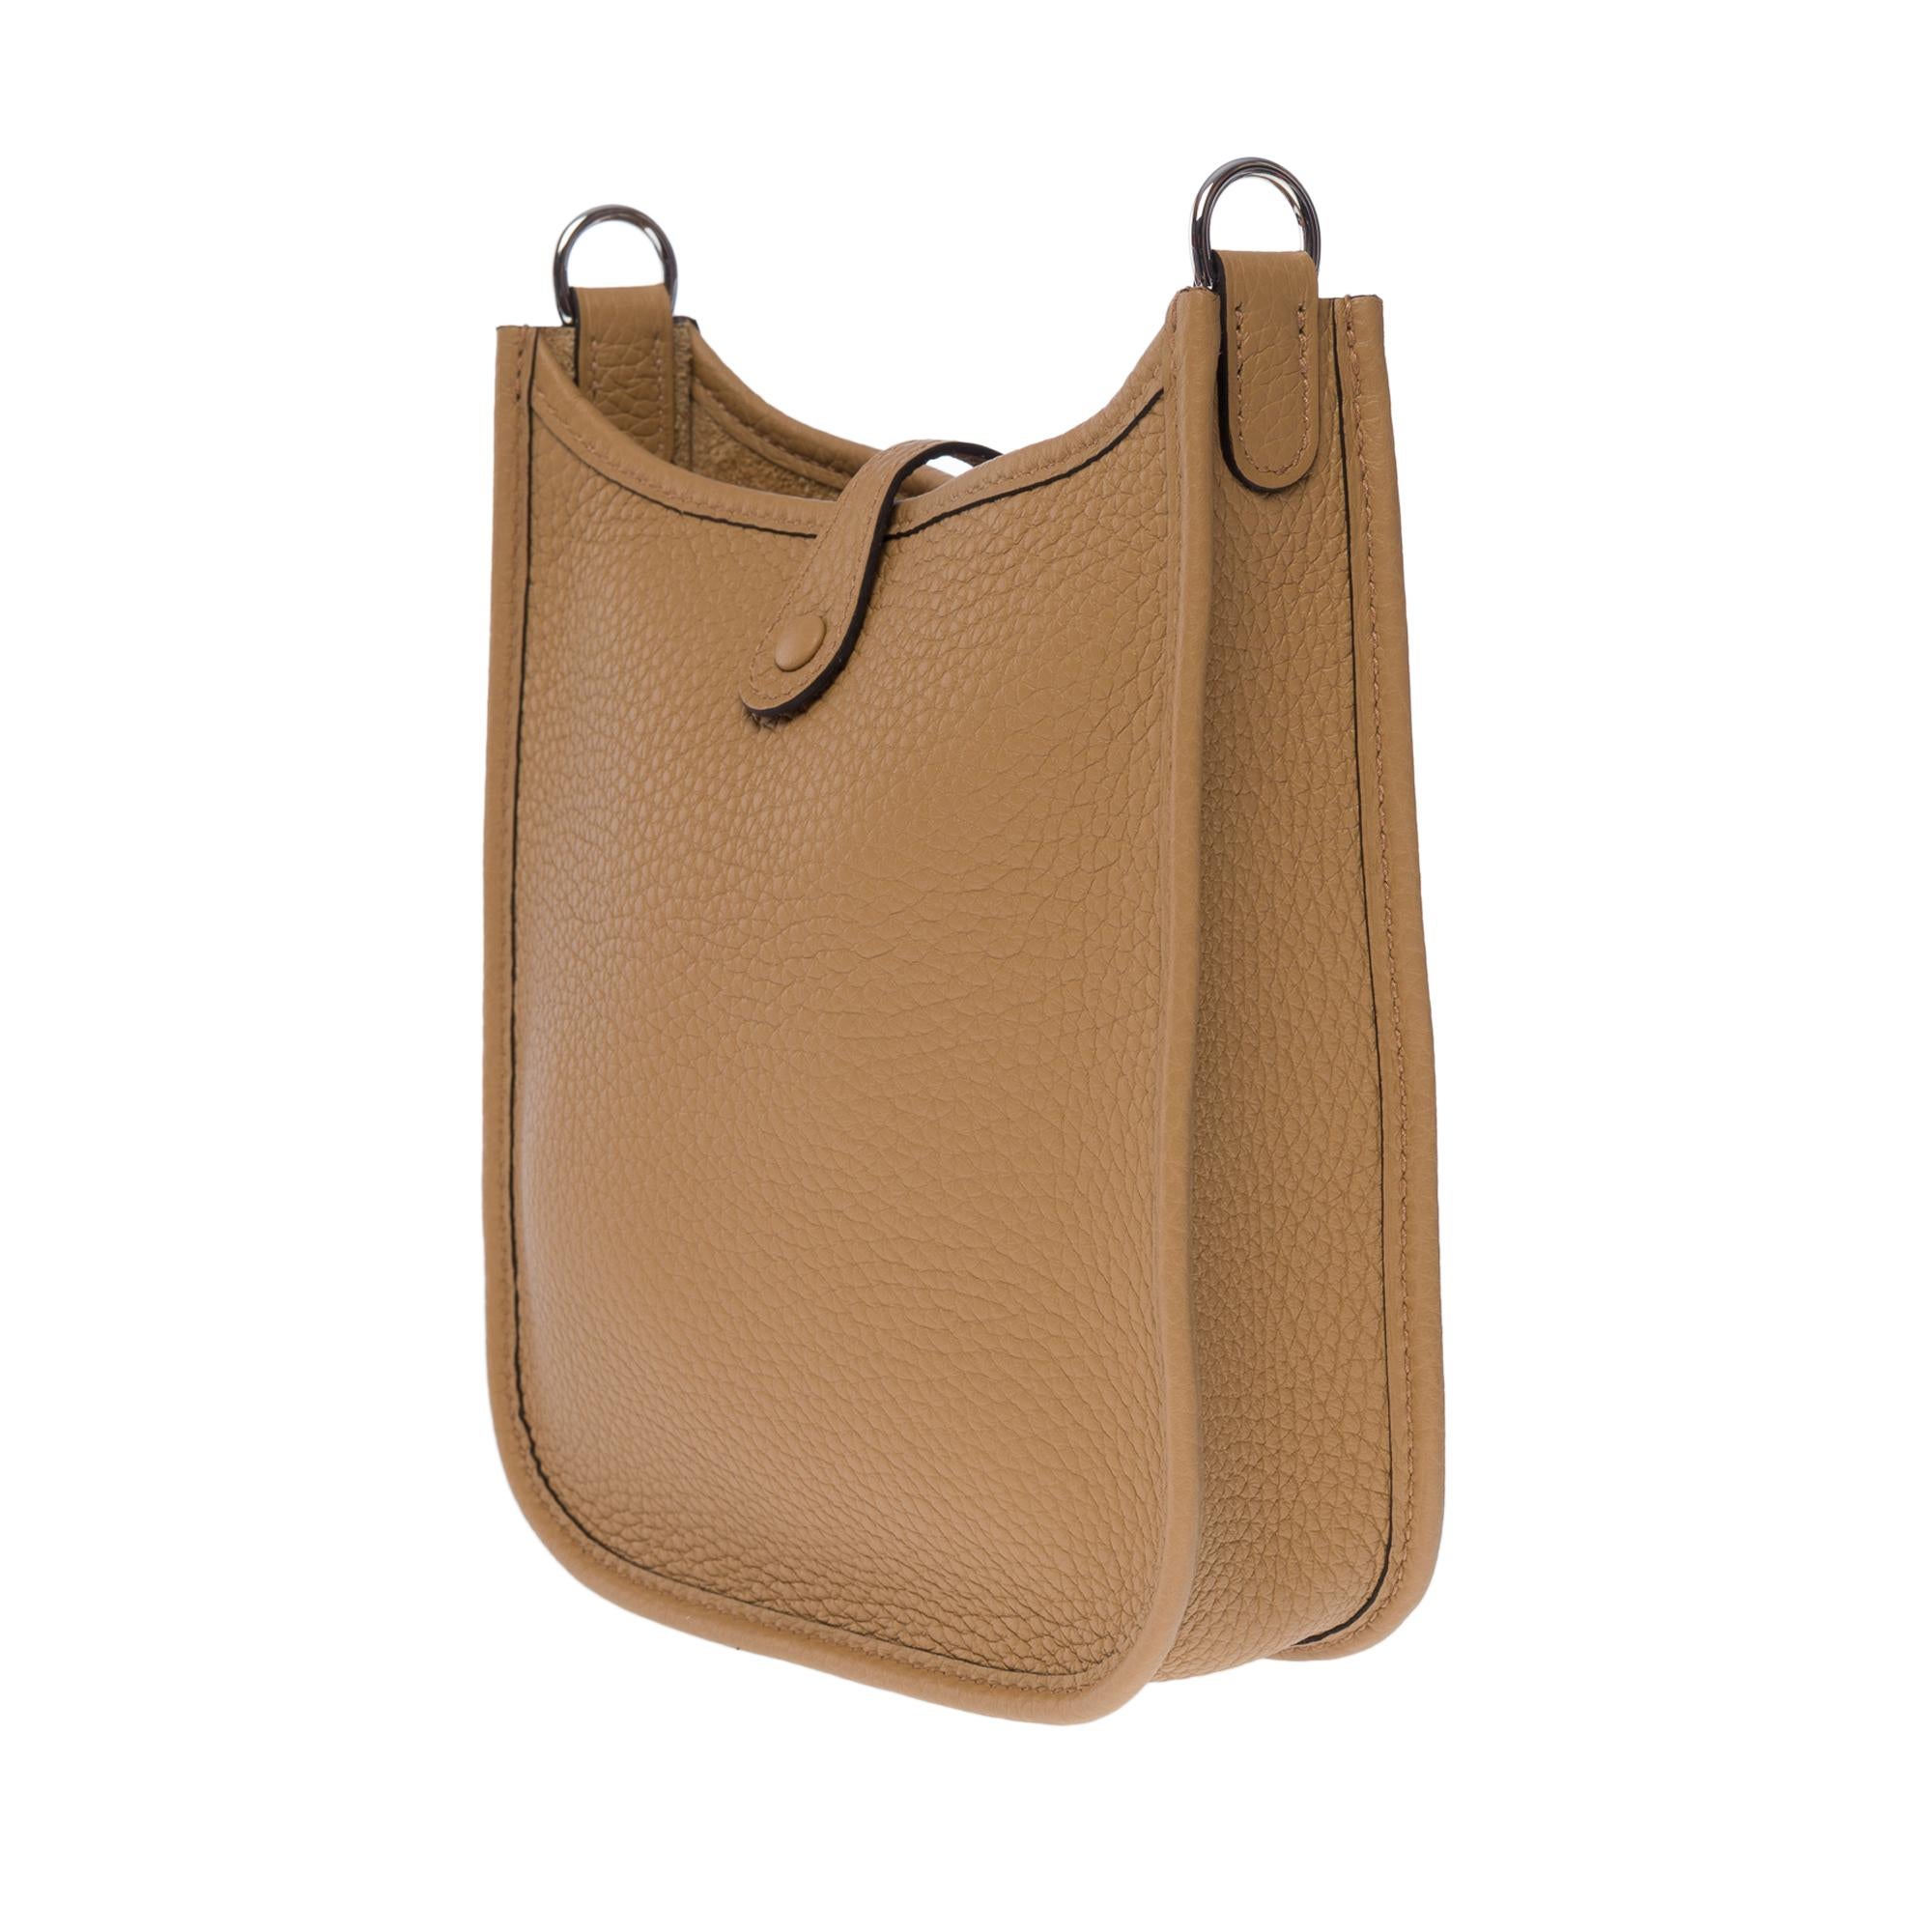 New Hermès Evelyne TPM shoulder bag in beige Taurillon Clemence leather, SHW 1